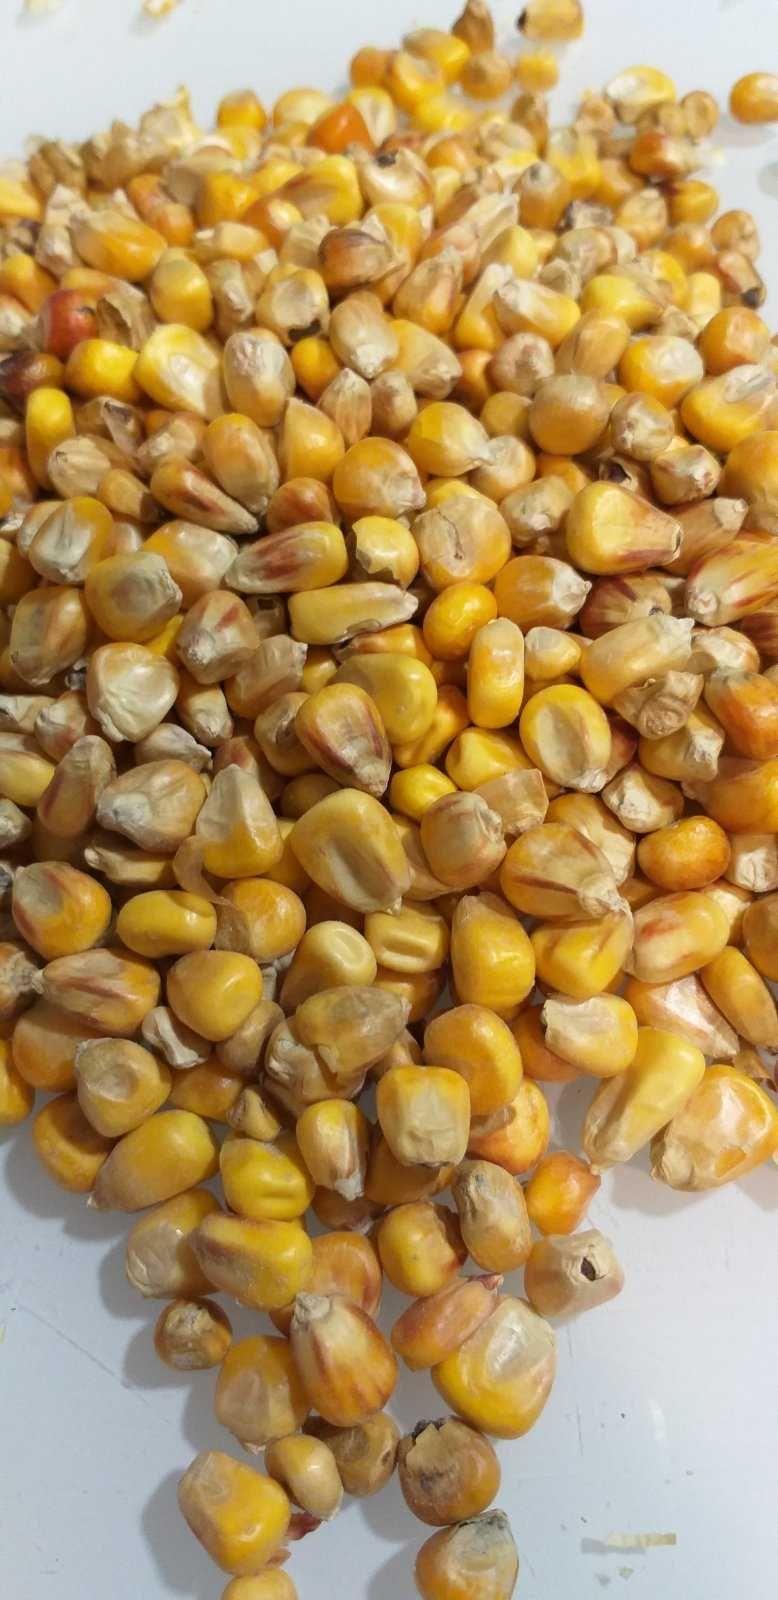 Кормовая кукуруза в мешках по 30 кг. Ціна з ОЛХ доставкою